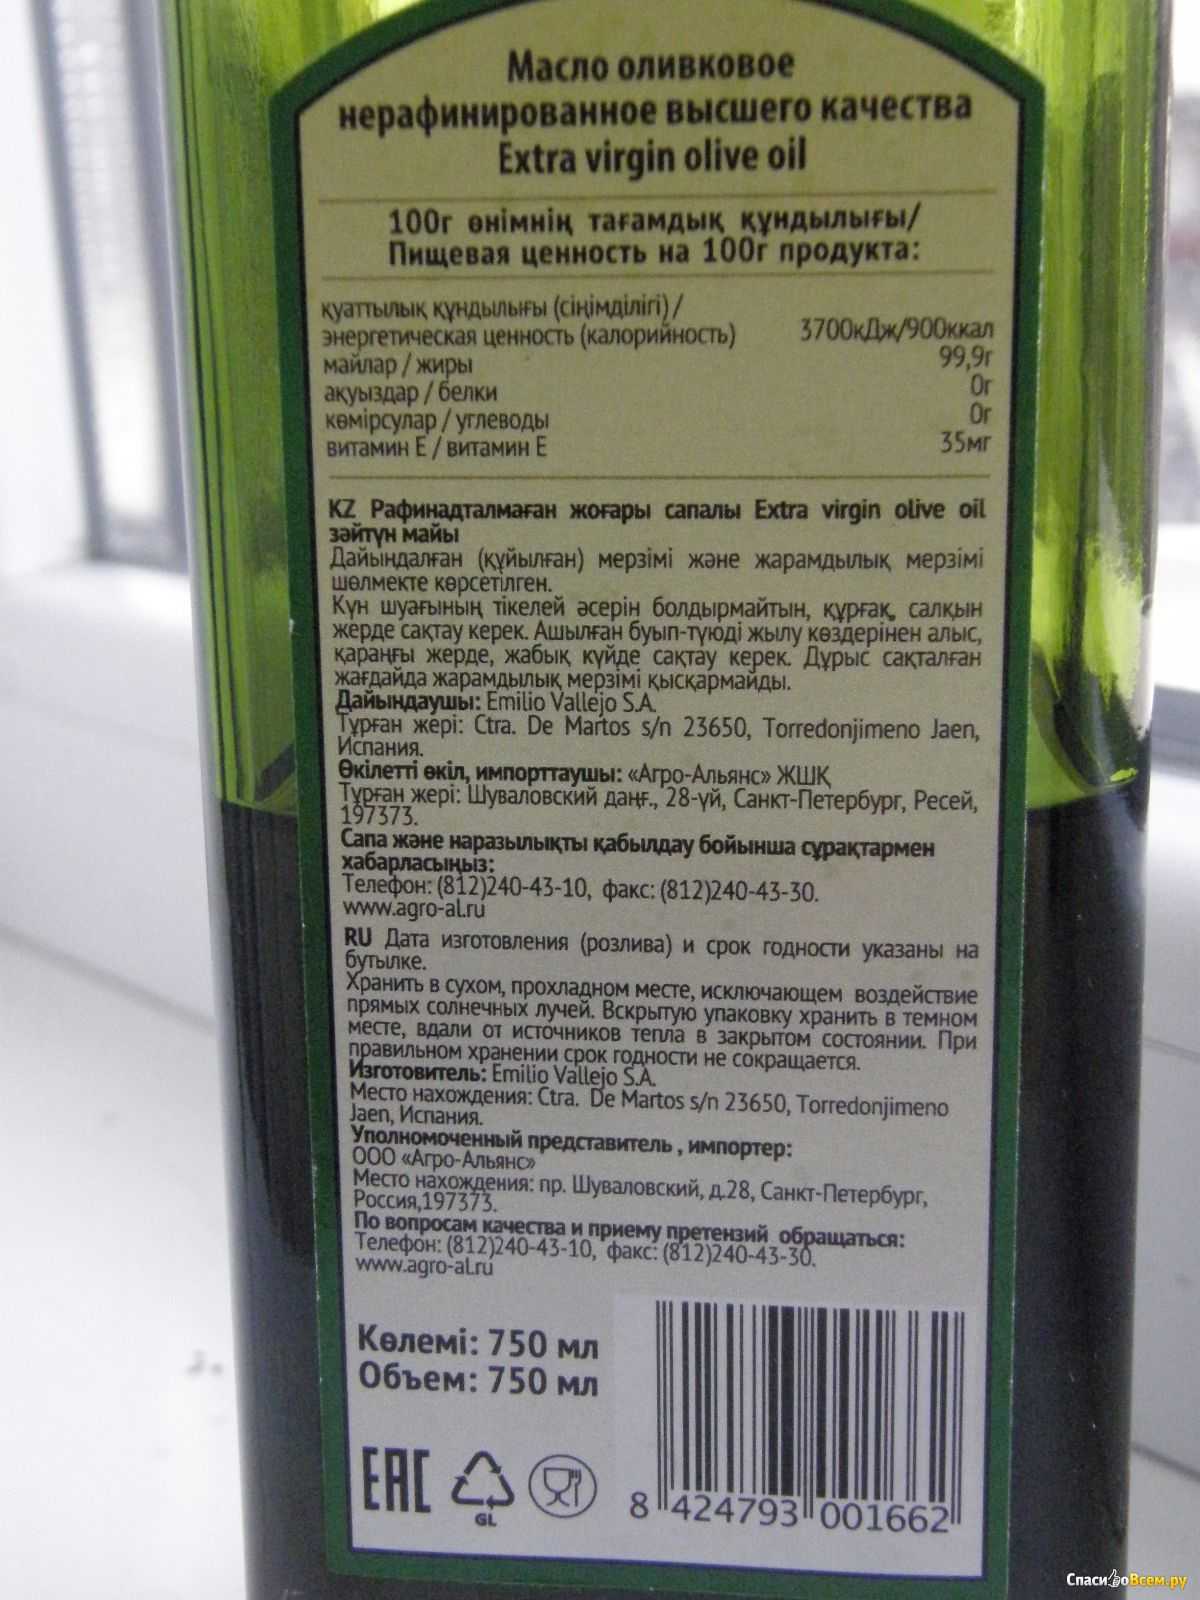 Оливковое масло высшего качества. Оливковое масло нерафинированное. Оливковое масло показатели качества. Самое лучшее оливковое масло.